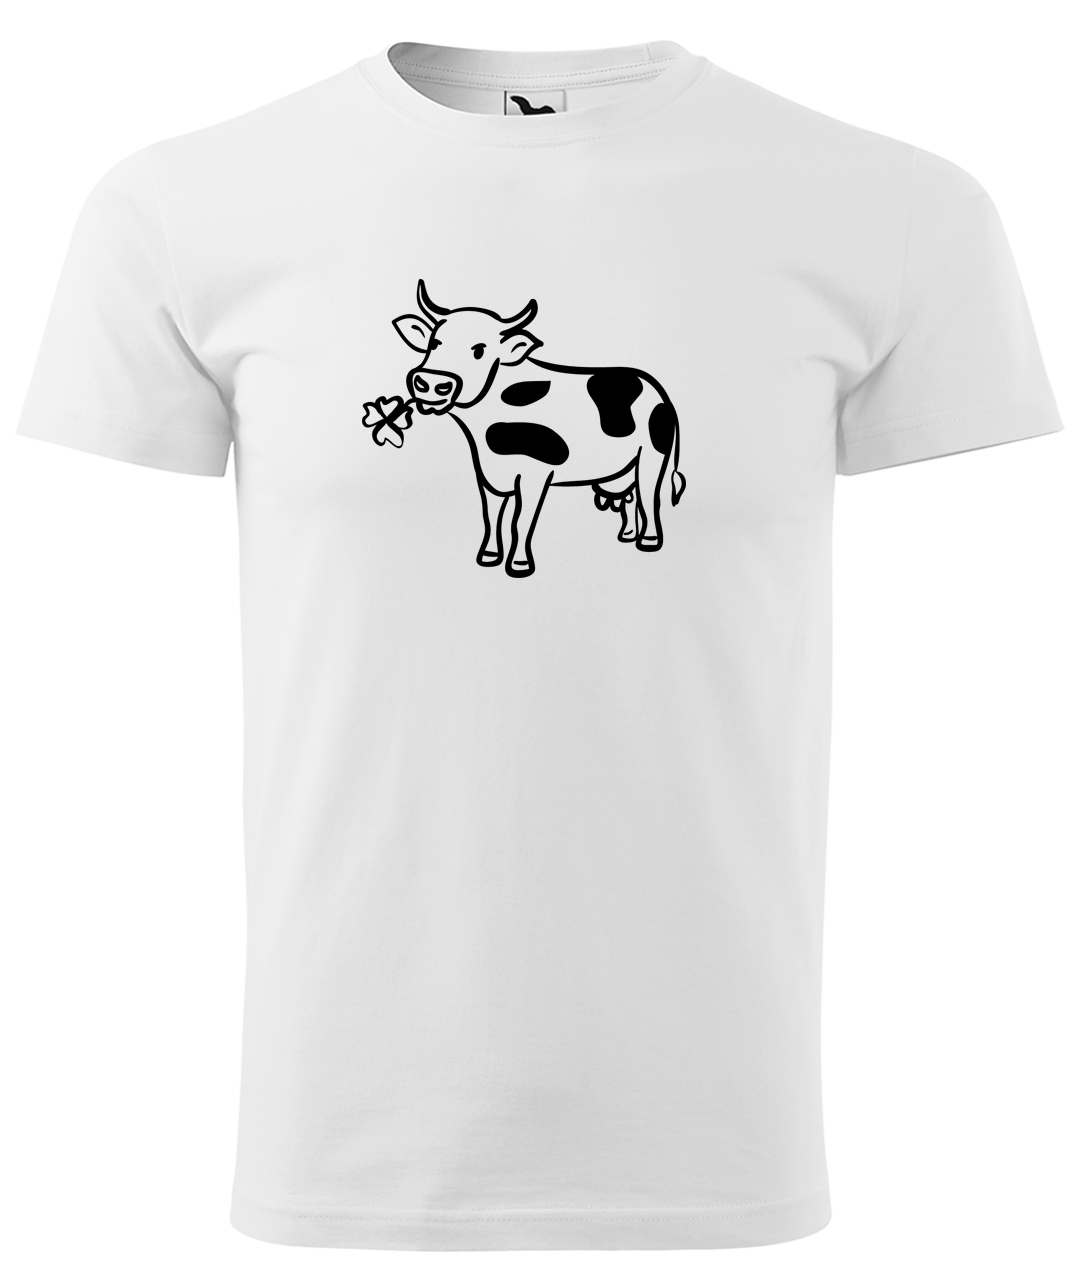 Dětské tričko s krávou - Kravička a jetel Velikost: 4 roky / 110 cm, Barva: Bílá (00), Délka rukávu: Krátký rukáv